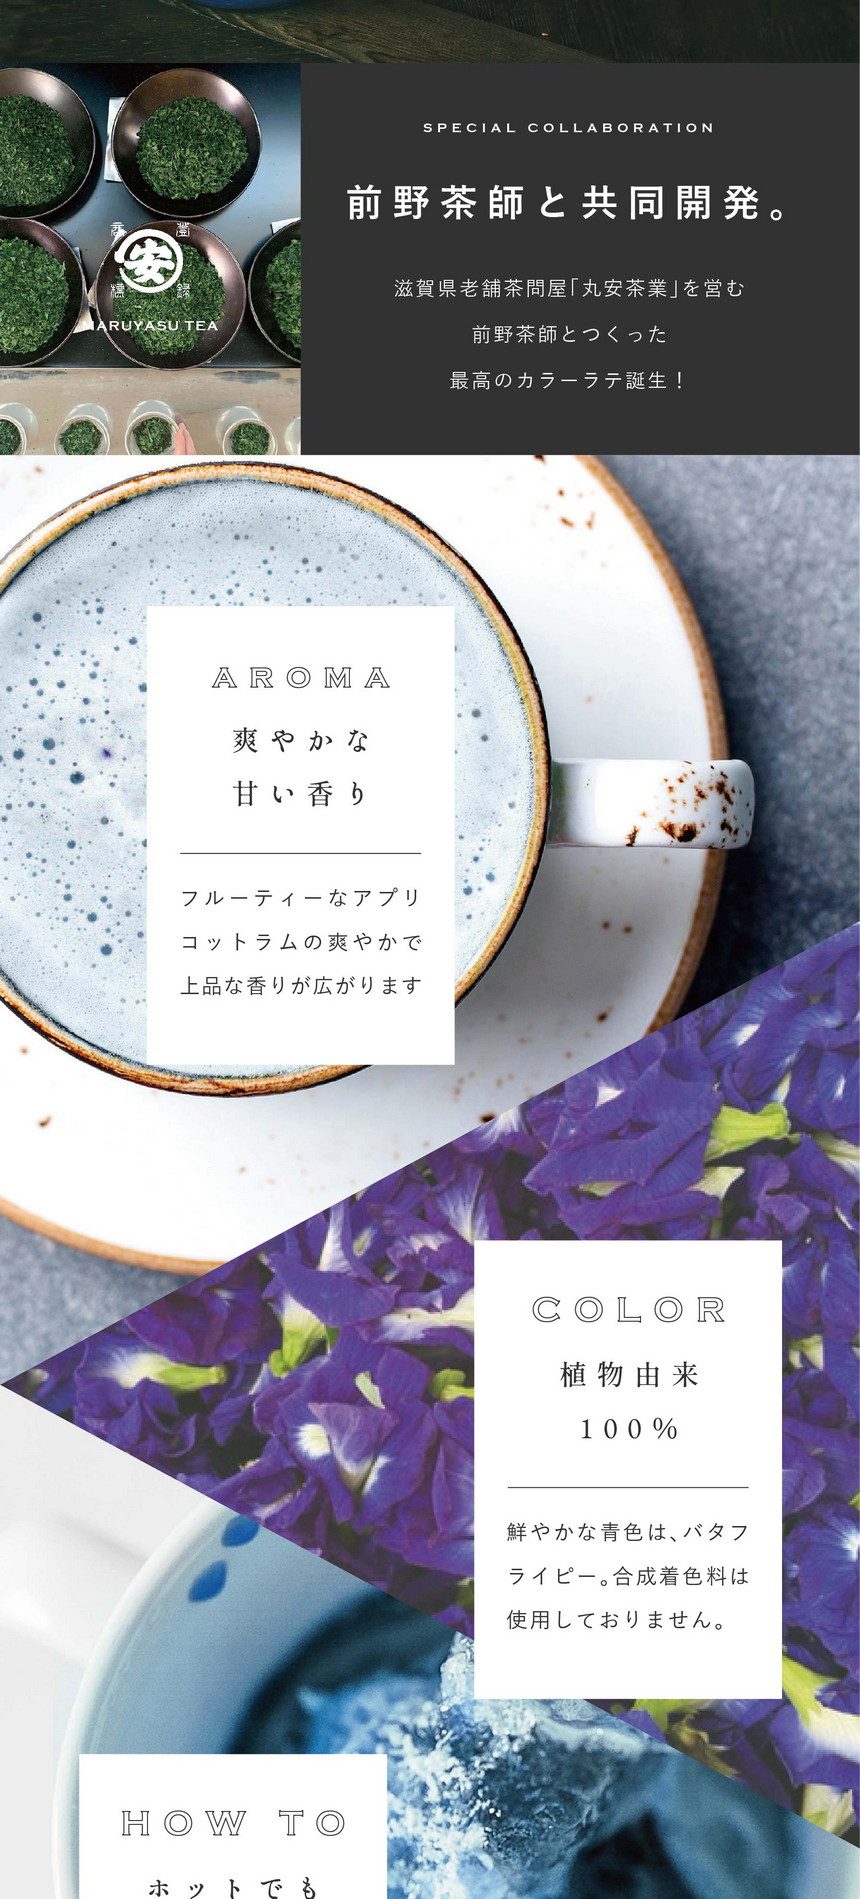 前野茶師と共同開発。滋賀県老舗茶問屋「丸安茶業」を営む前野茶師とつくった最高のカラーラテ誕生！AROMA 爽やかな甘い香り。フルーティーなアプリコットラムの爽やかで上品な香りが広がります。COLOR 植物由来100％。鮮やかな青色はバタフライピー。合成着色料は使用しておりません。